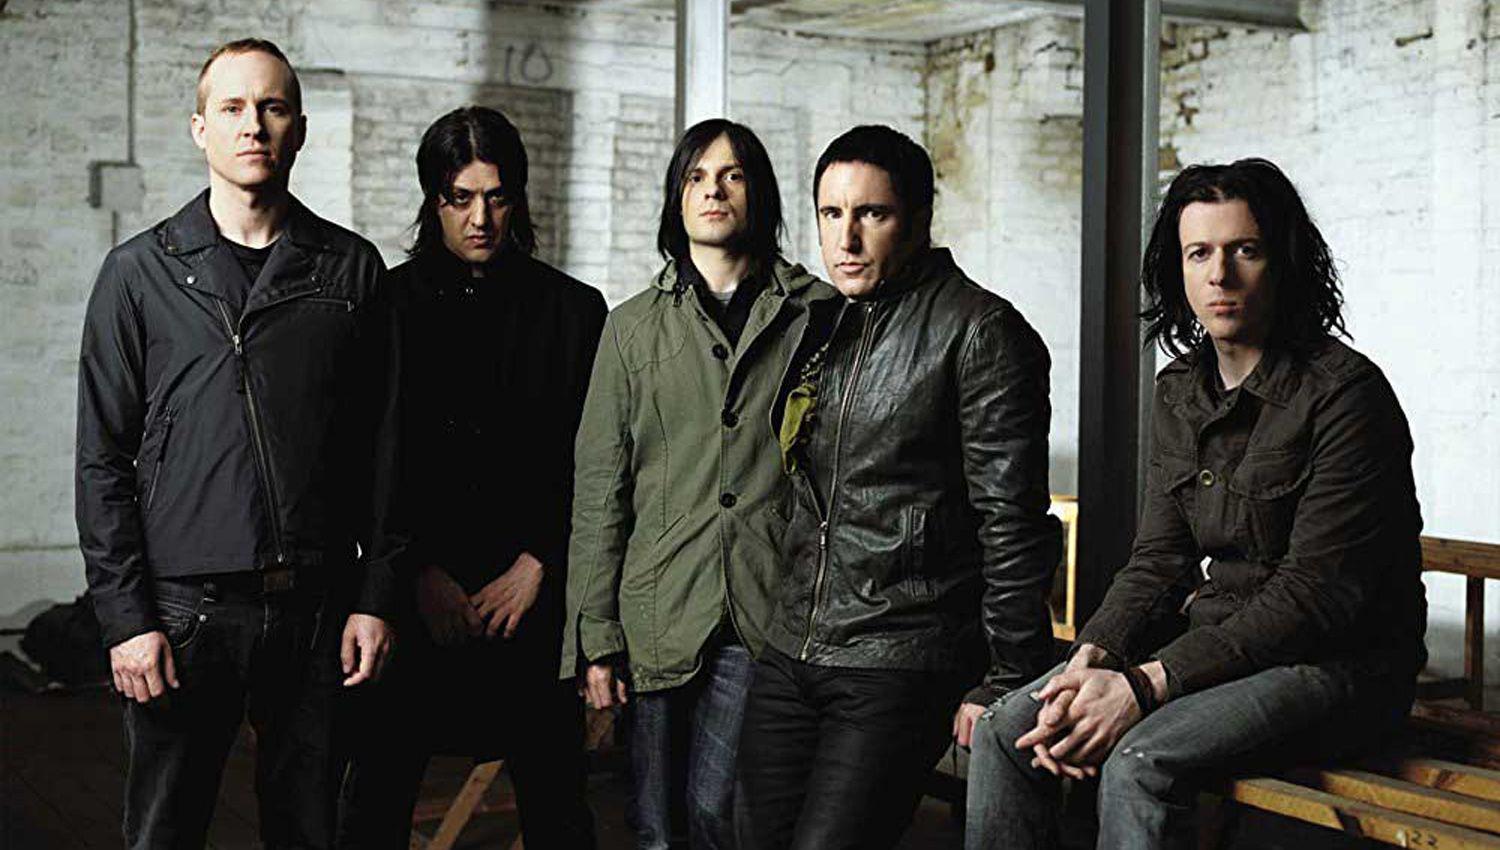 Las sensaciones de aislamiento en un CD doble de Nine Inch Nails